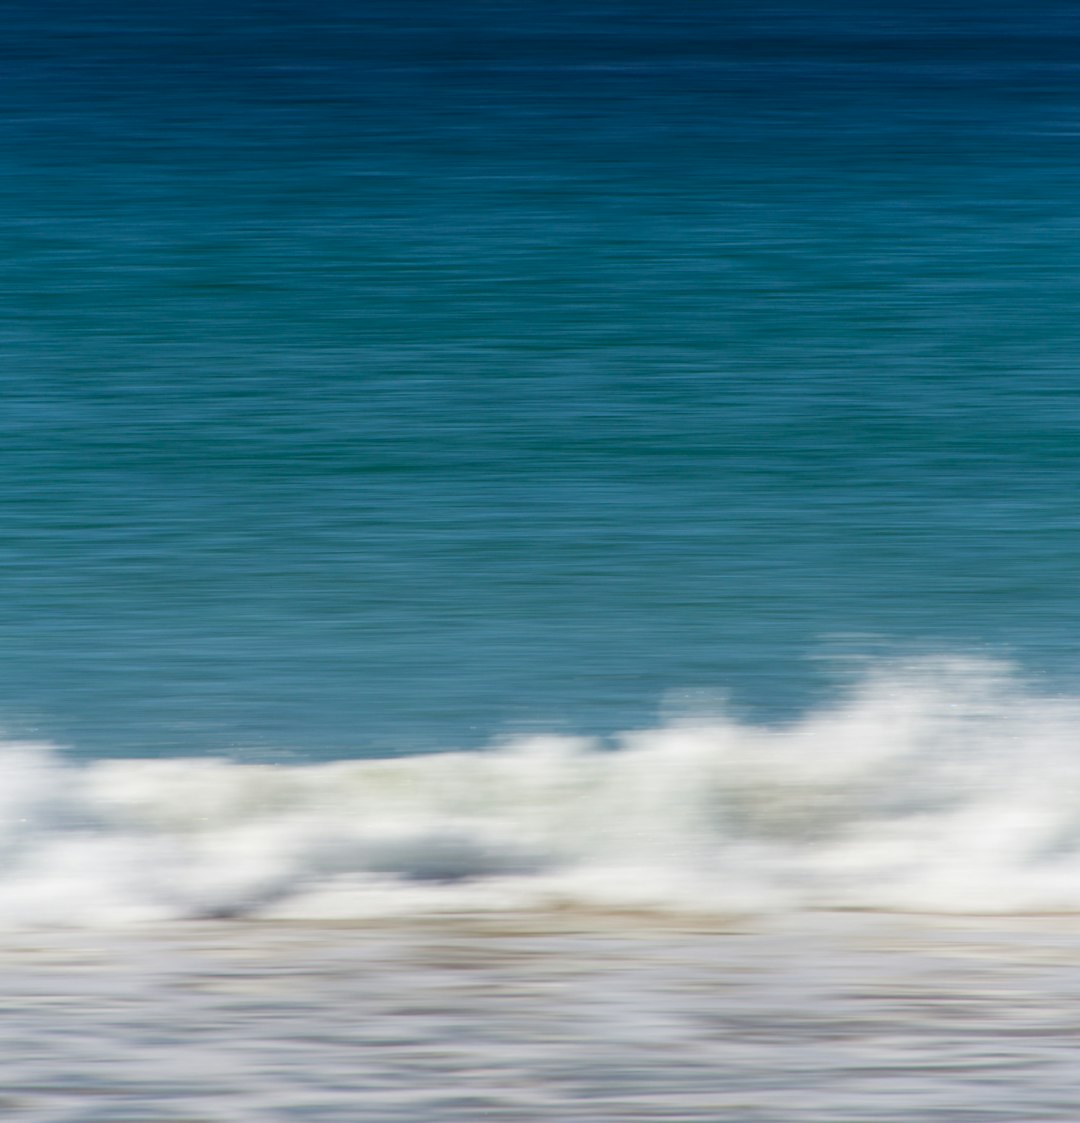 Ocean photo spot Manly Beach Annangrove NSW